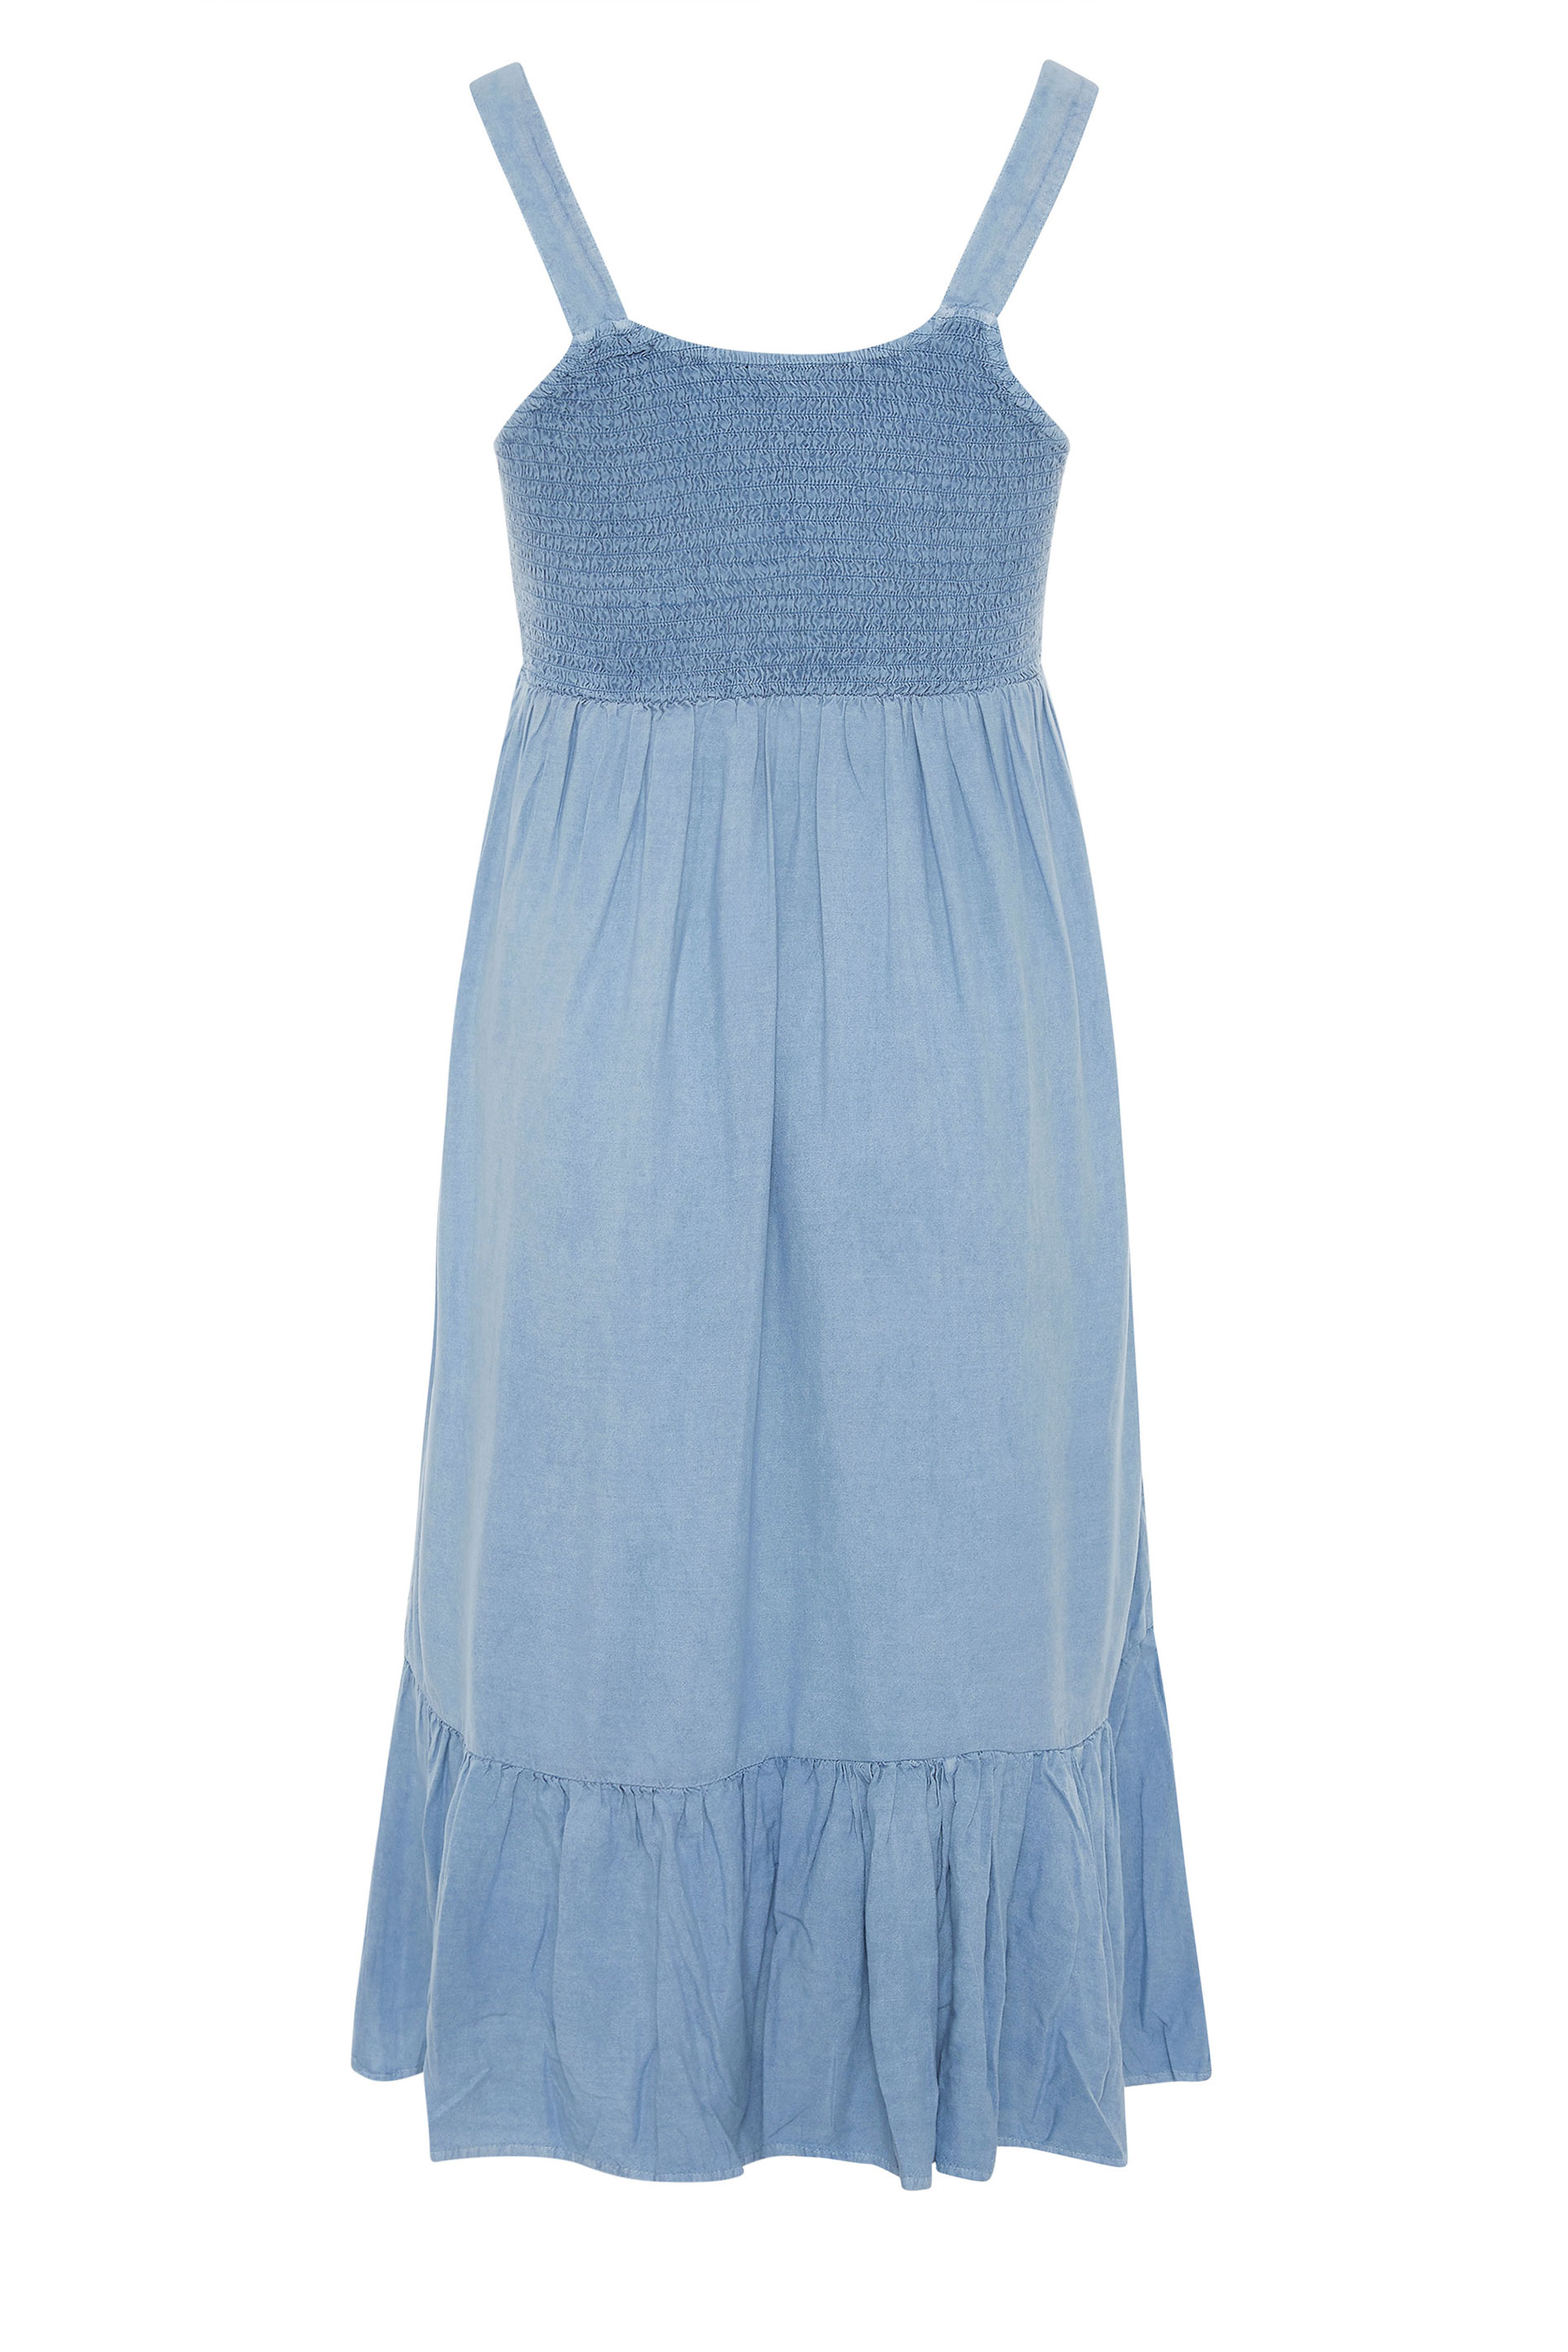 Blue Acid Wash Sleeveless Shirred Dress | Yours Clothing